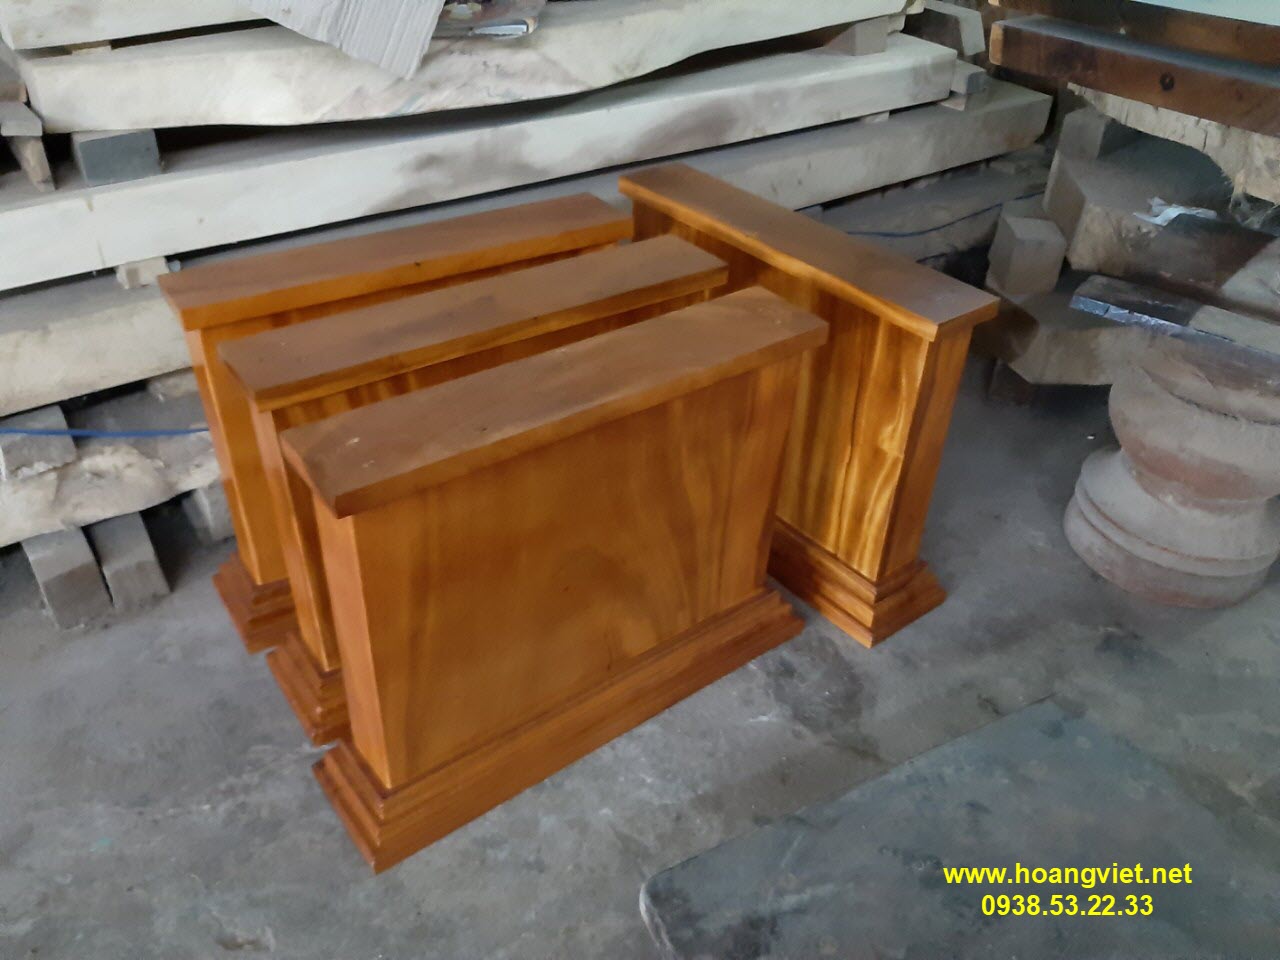 Chân bàn gỗ nguyên khối đẹp